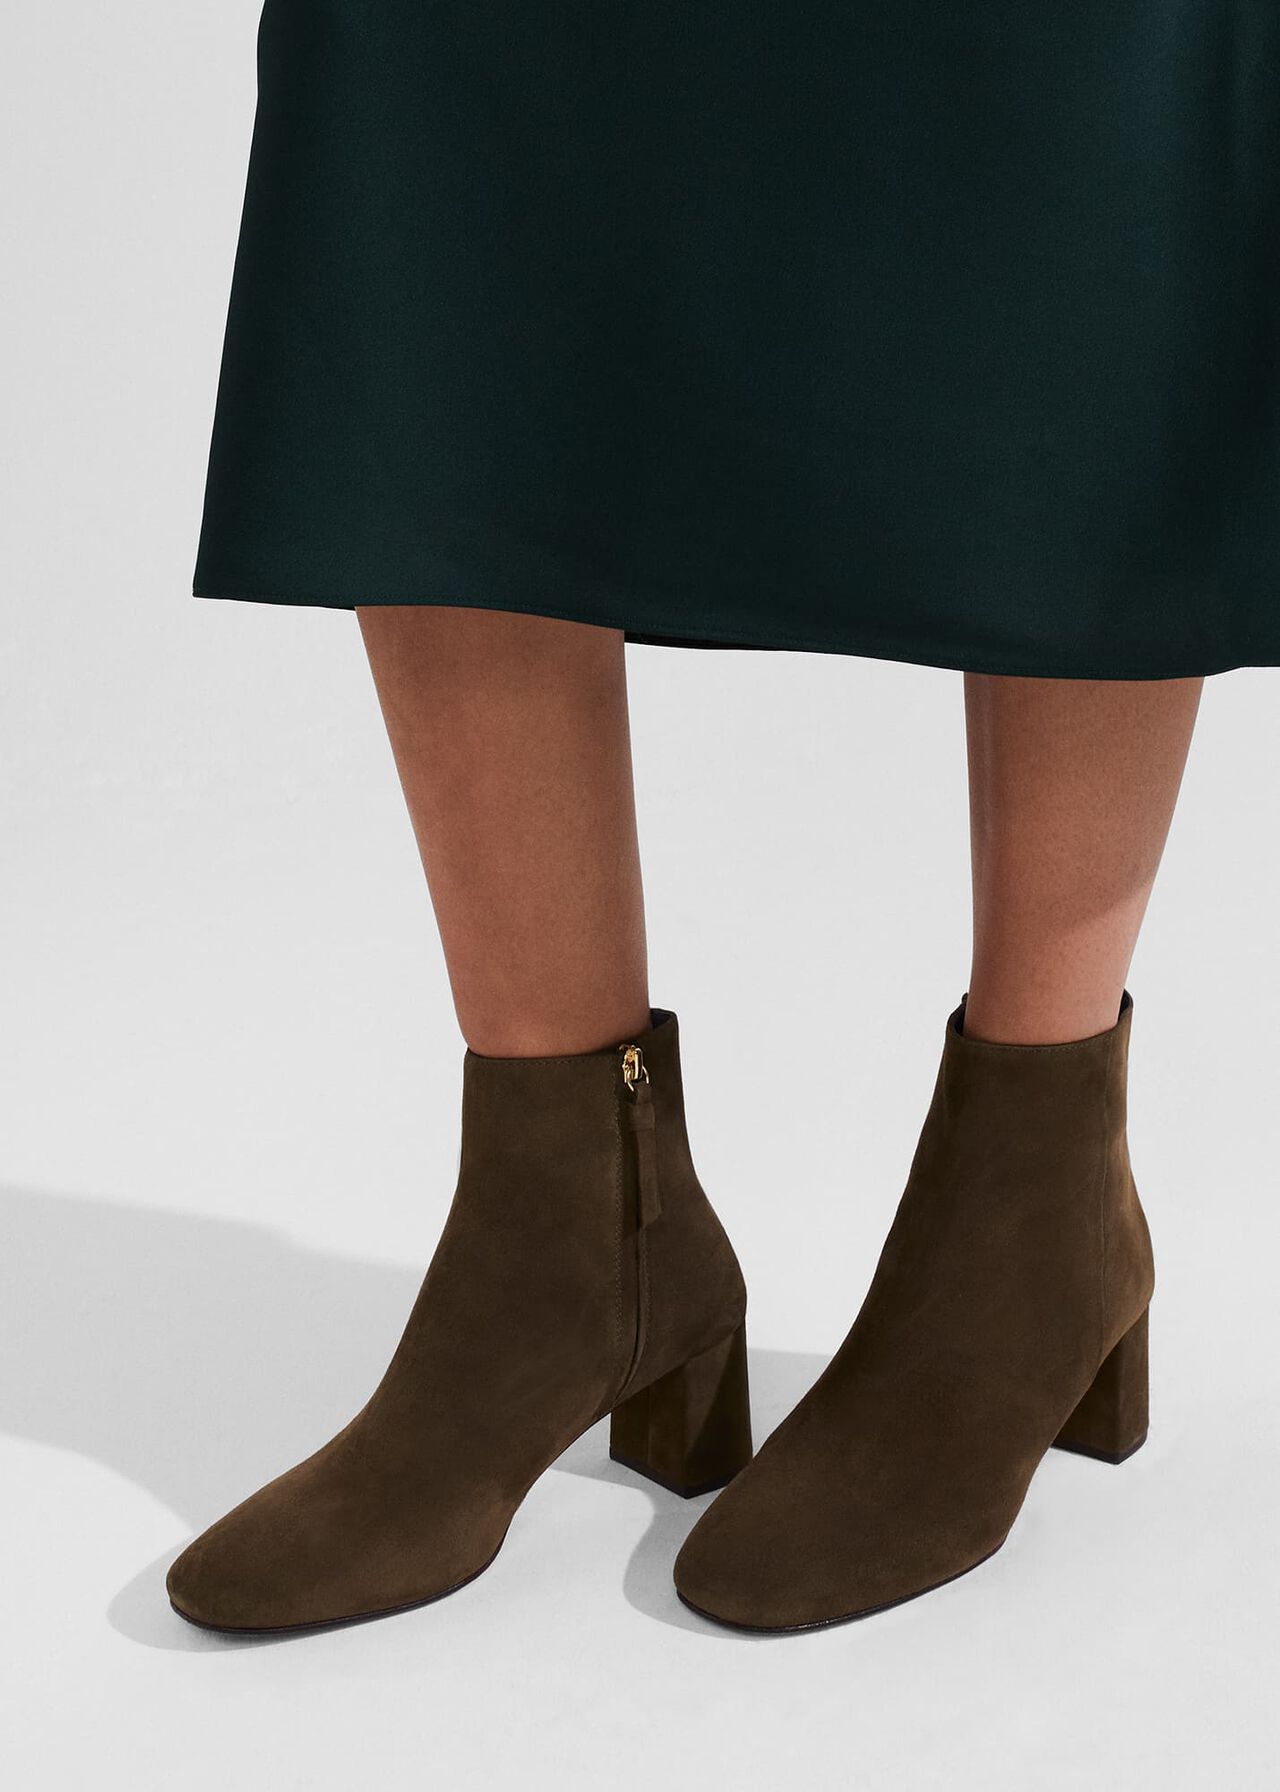 Imogen Ankle Boots, Olive, hi-res